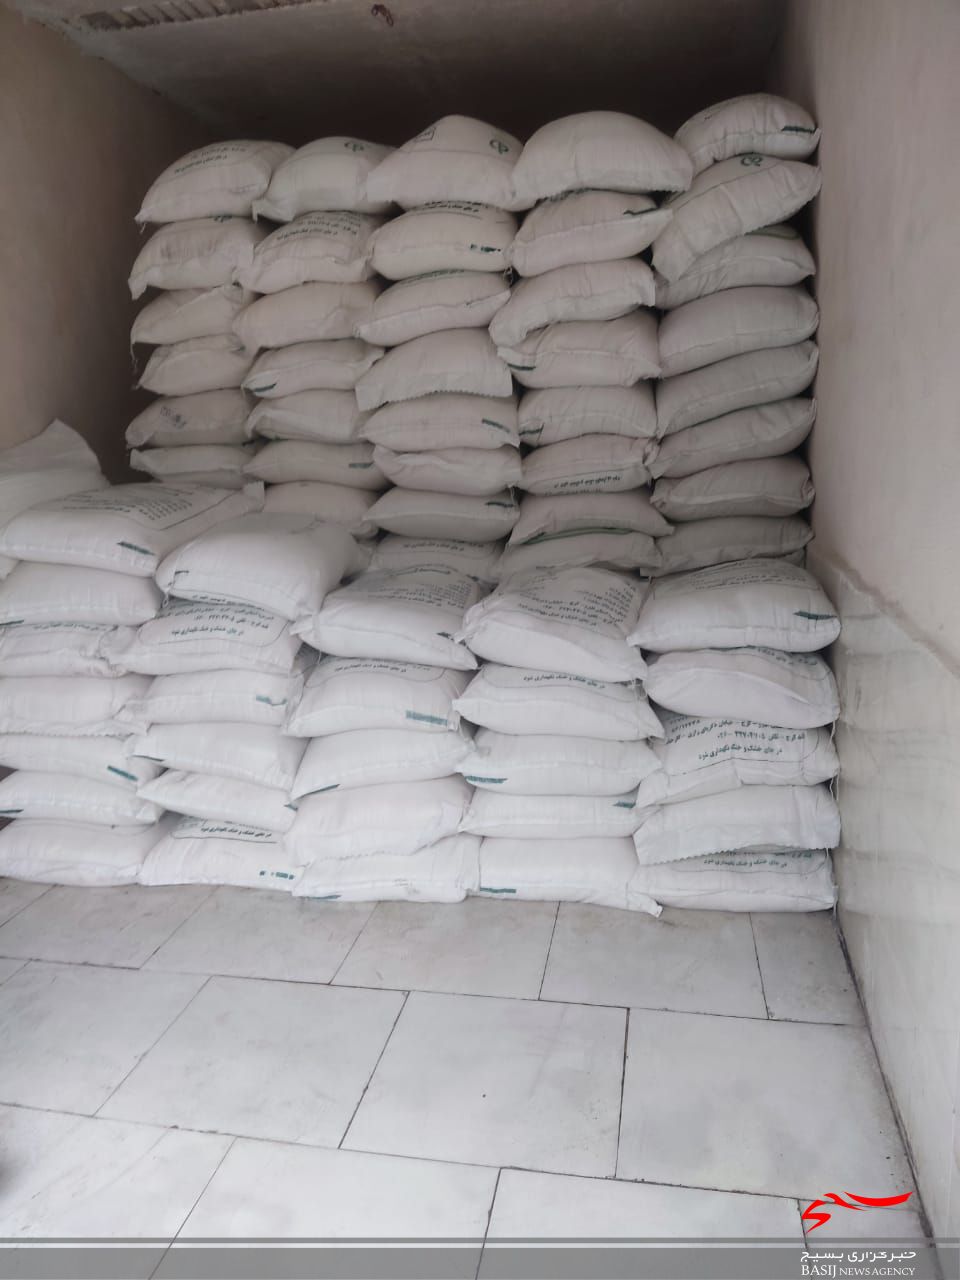 ۱۷ تن روغن و شکر و ۳ هزار بسته ماکارونی در سوادکوه شمالی کشف شد + عکس